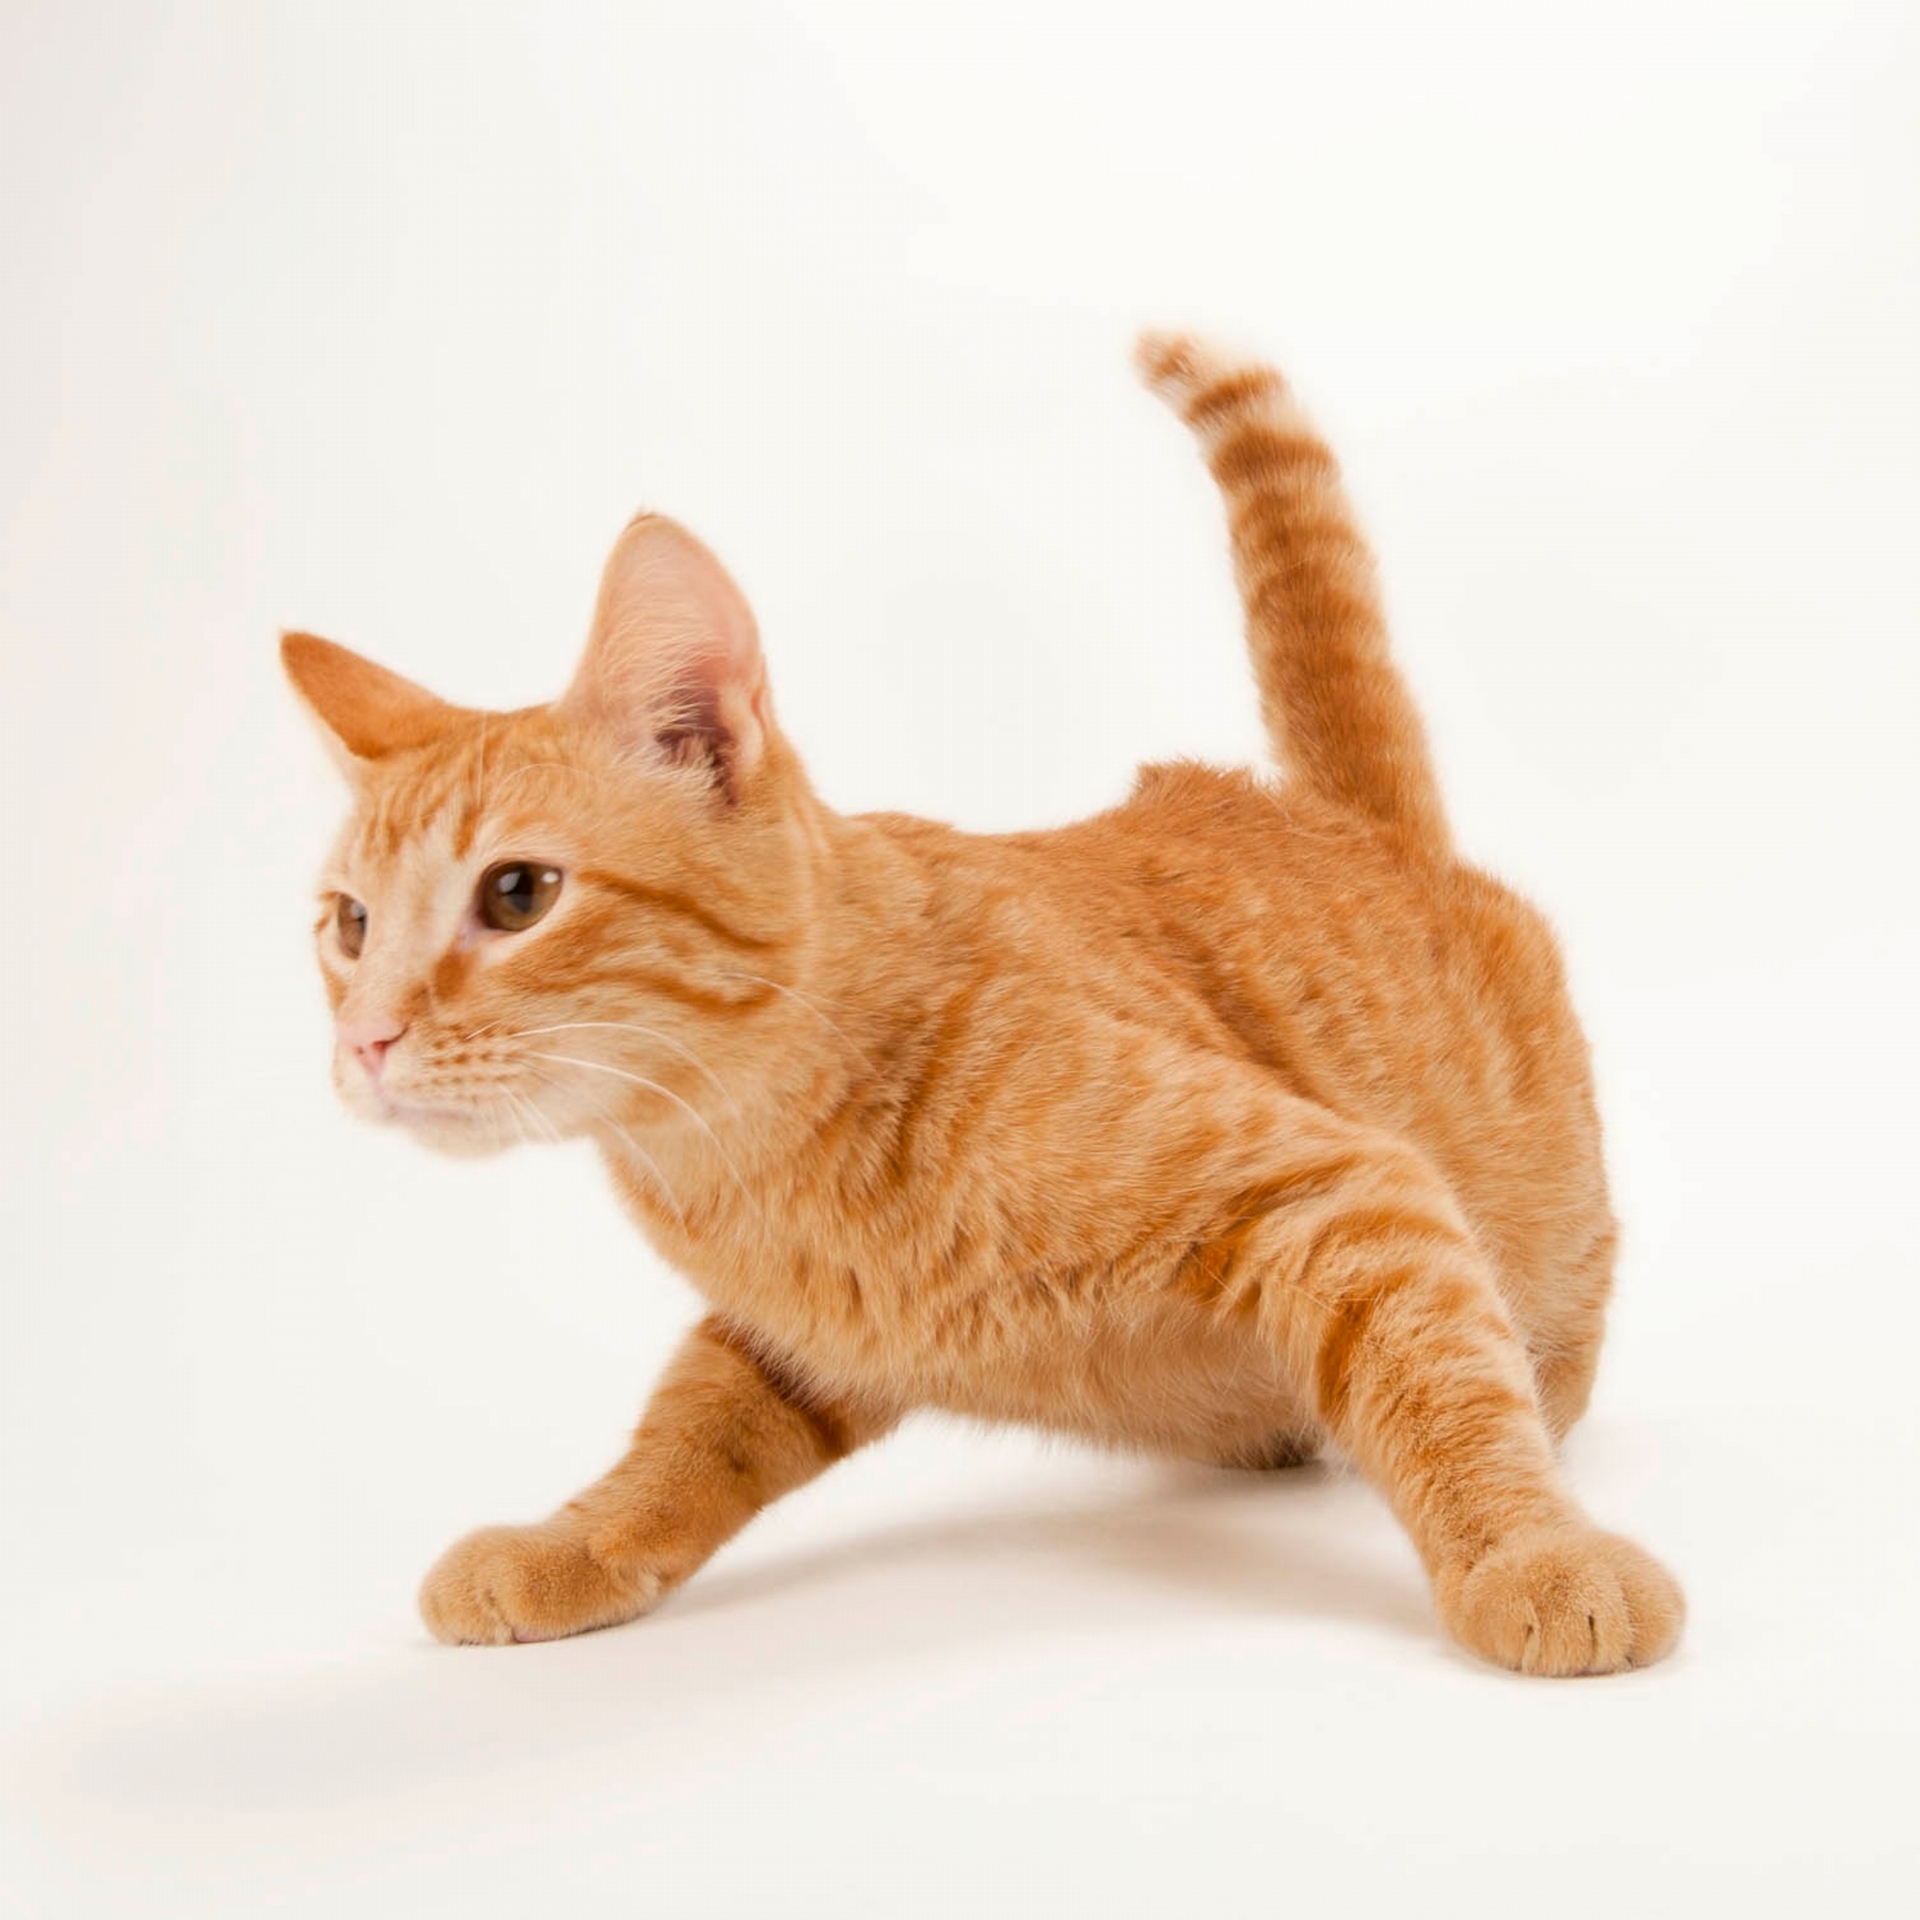 一隻橘色虎斑貓展現出開心和滿足的重要象徵：耳朵轉向前方。 JOEL SARTORE 